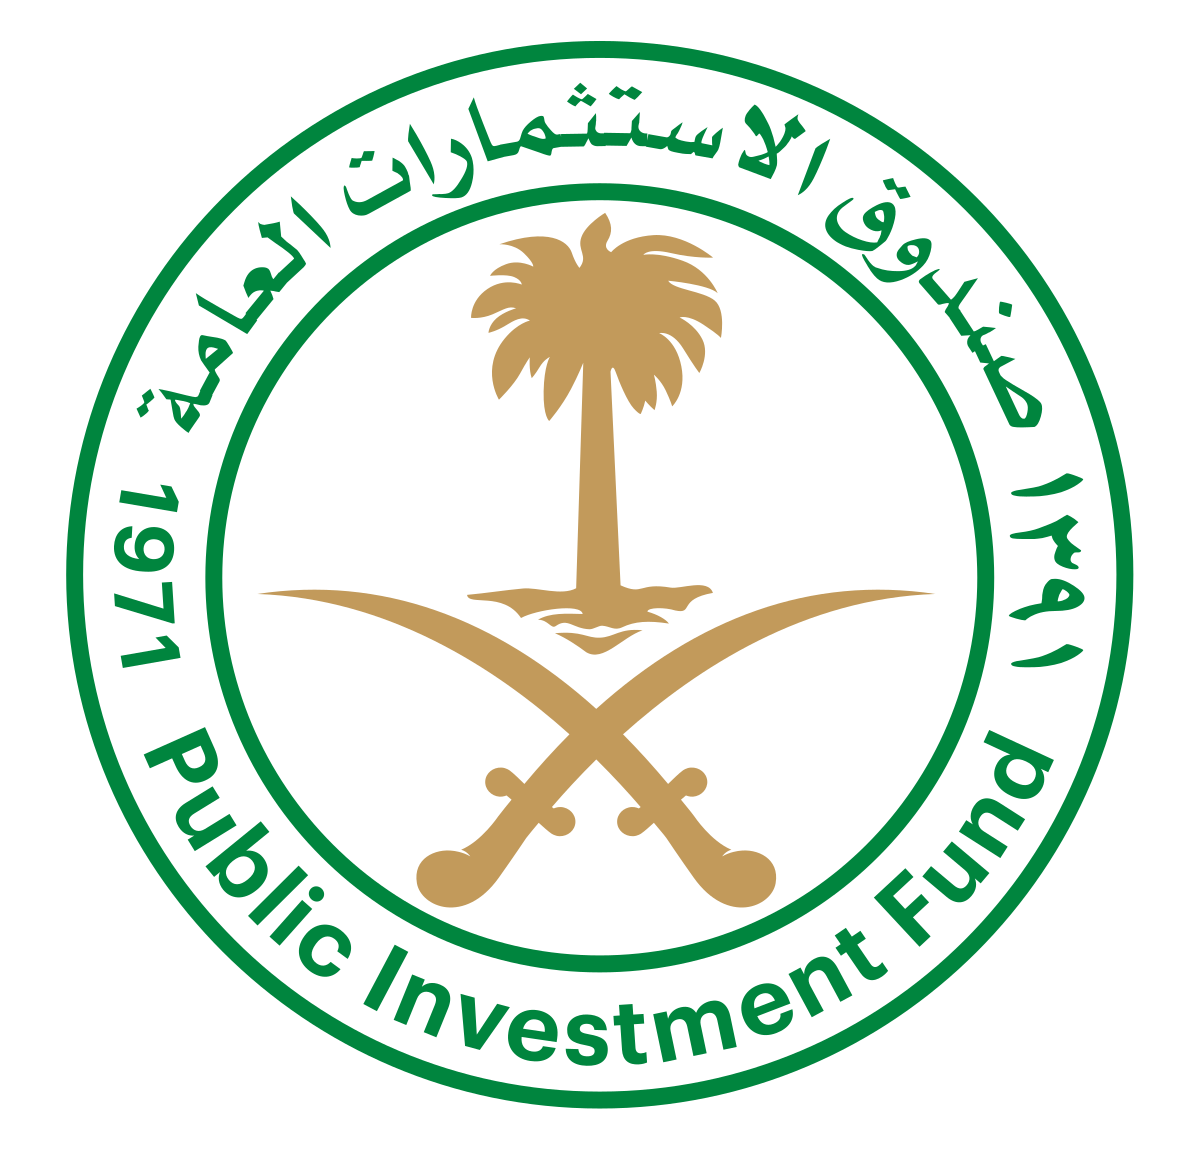 Public Investment Fund (PIF)